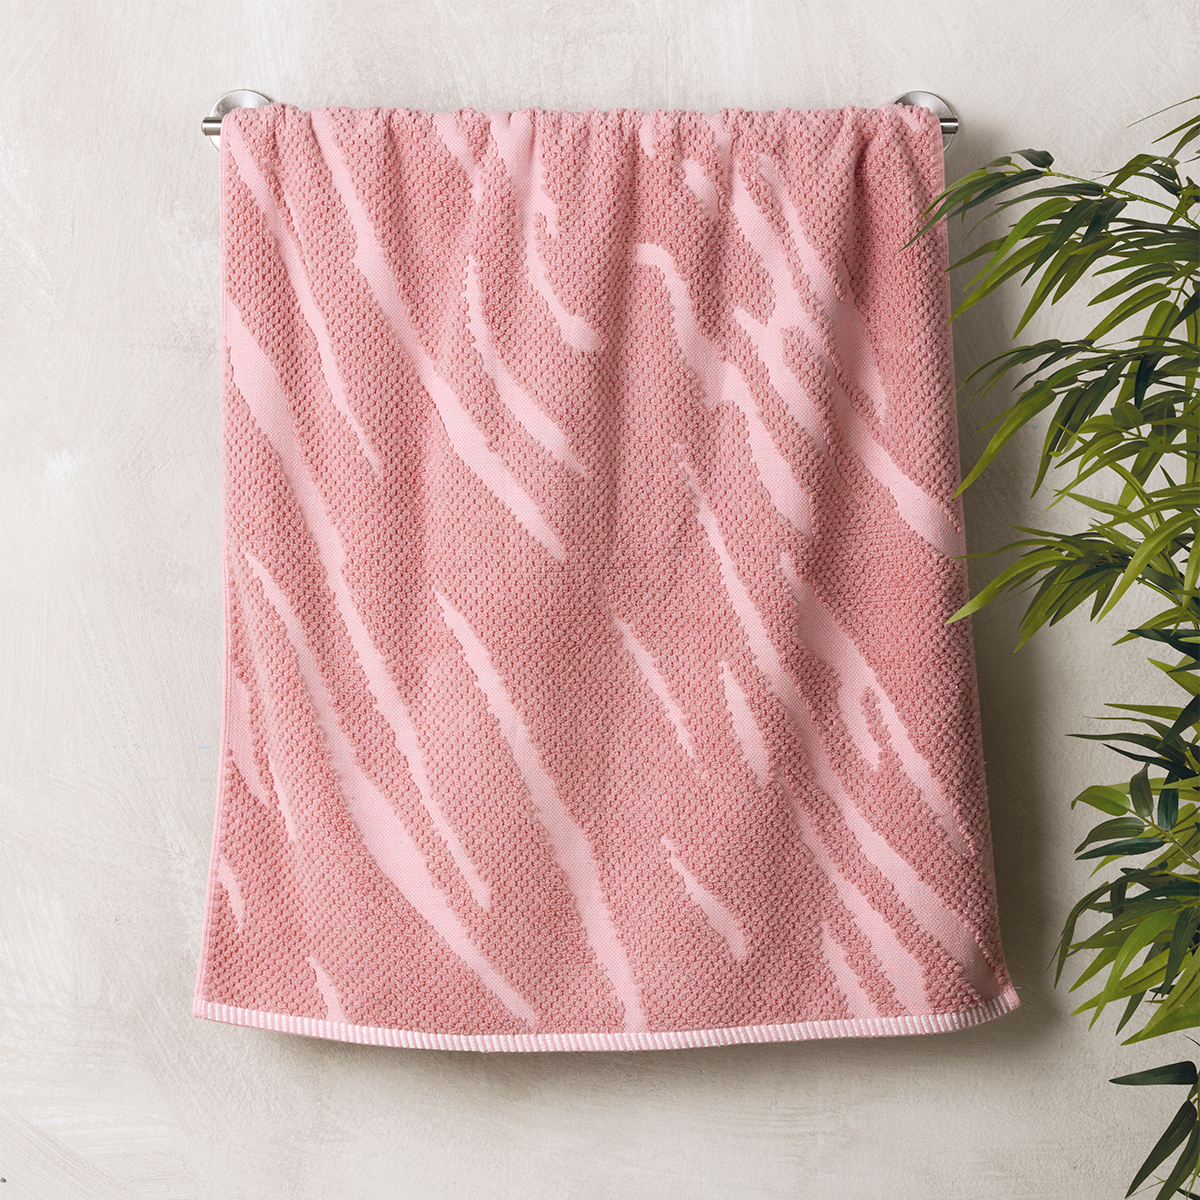 Πετσέτα Σώματος (70×140) Kentia Stylish History 14 Pink 600gsm